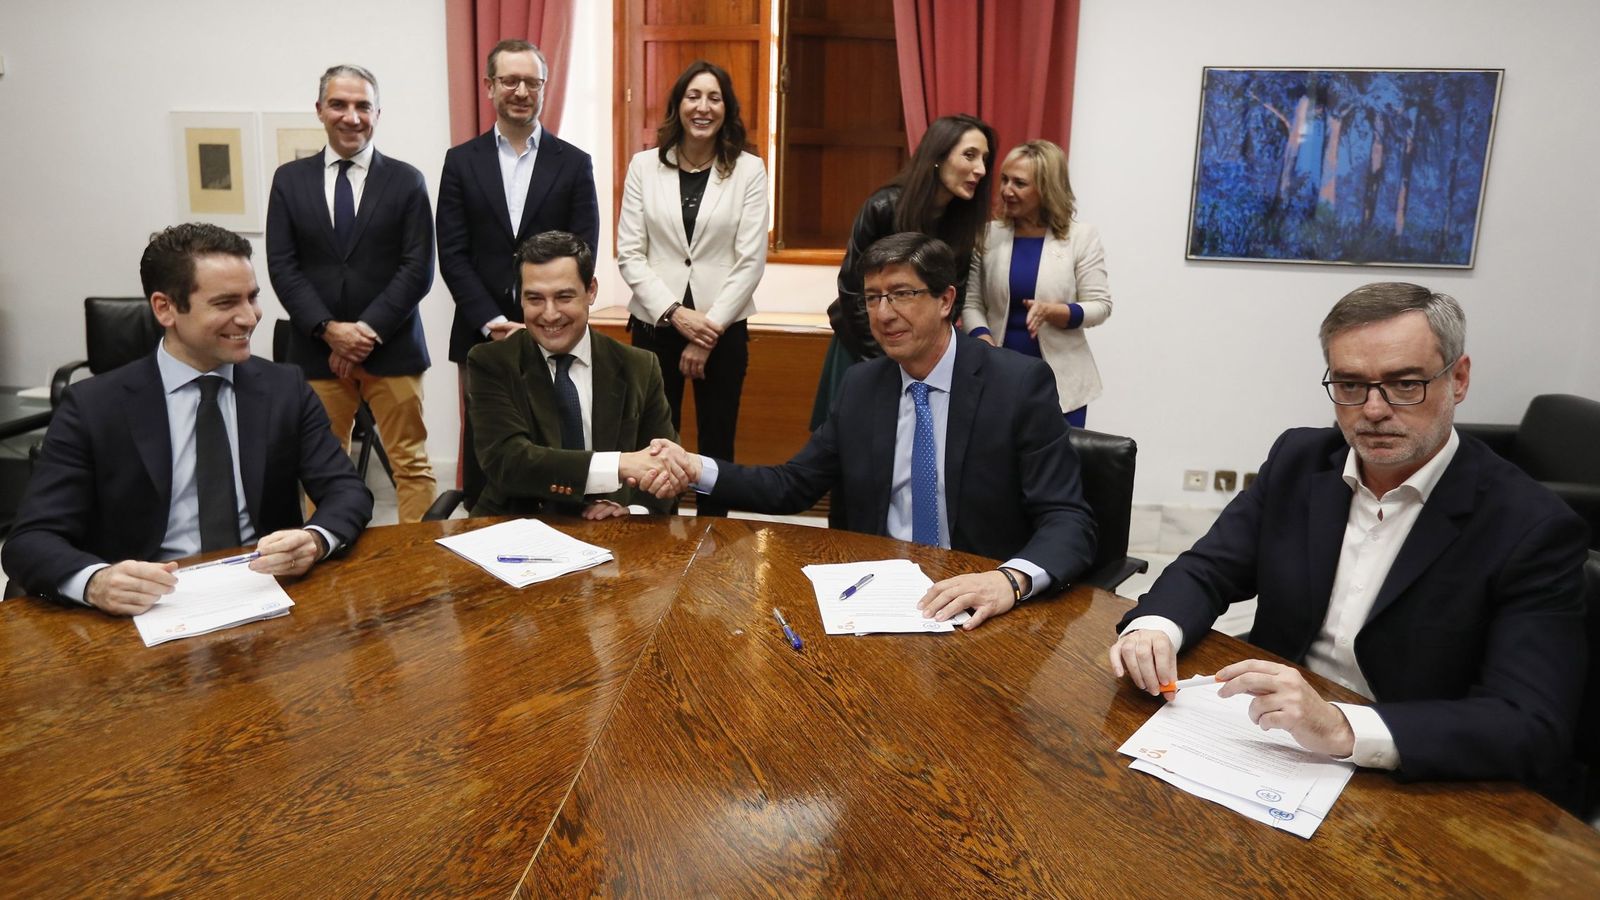 Foto: El presidente andaluz del Partido Popular, Juanma Moreno (2i), y el de Ciudadanos, Juan Marín (2d), estrechan las manos durante la reunión en el Parlamento de Andalucía. (EFE)